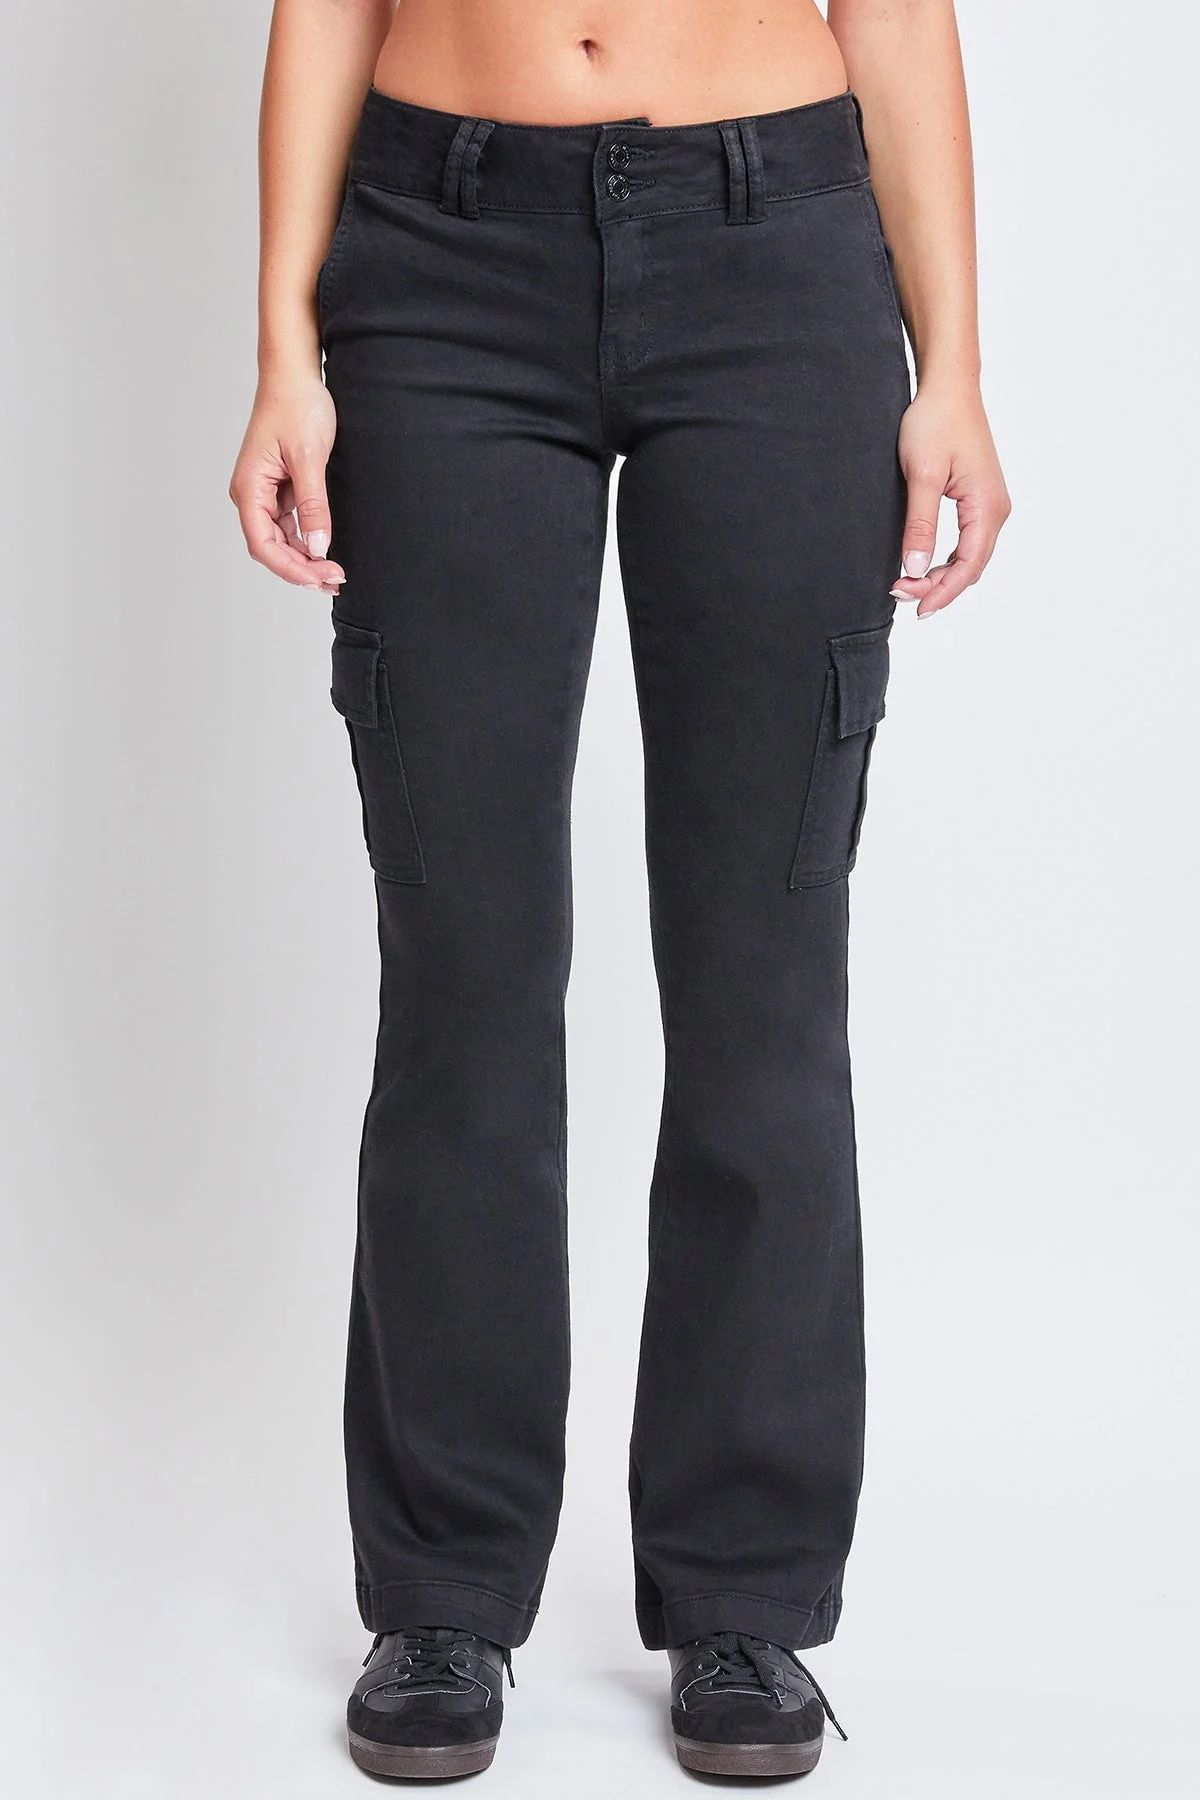 YMI Jeans Women's Low Rise Cargo Flare Jeans | Walmart (US)